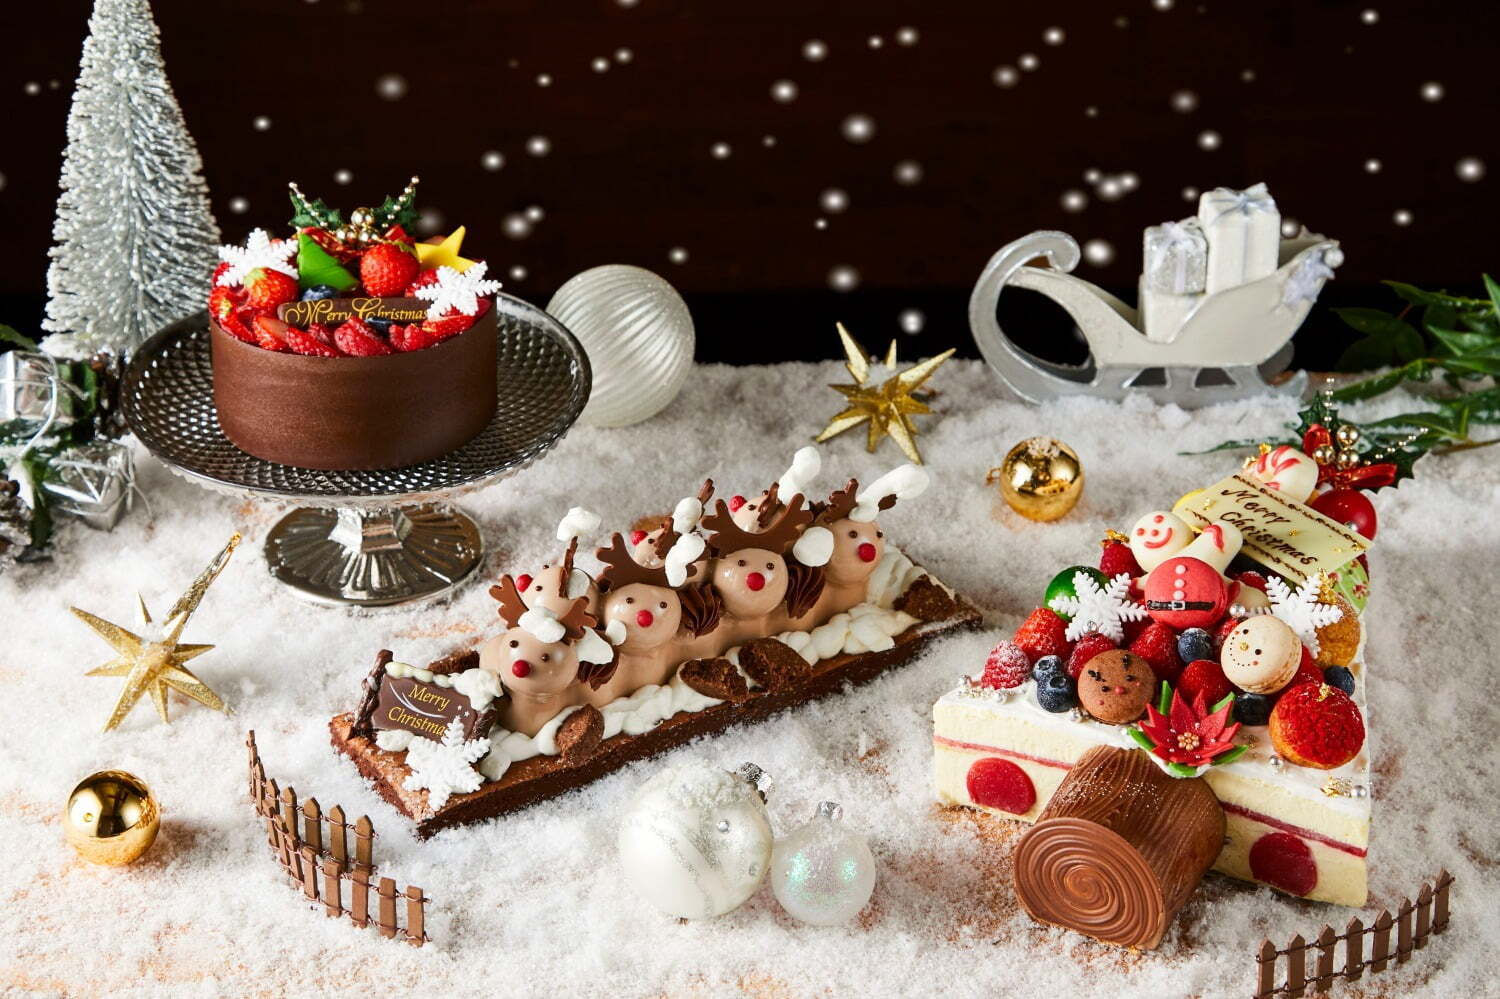 サダハル アオキのクリスマス イチゴ 抹茶の リース型 ケーキやマカロン添え ツリー型 ケーキ ファッションプレス